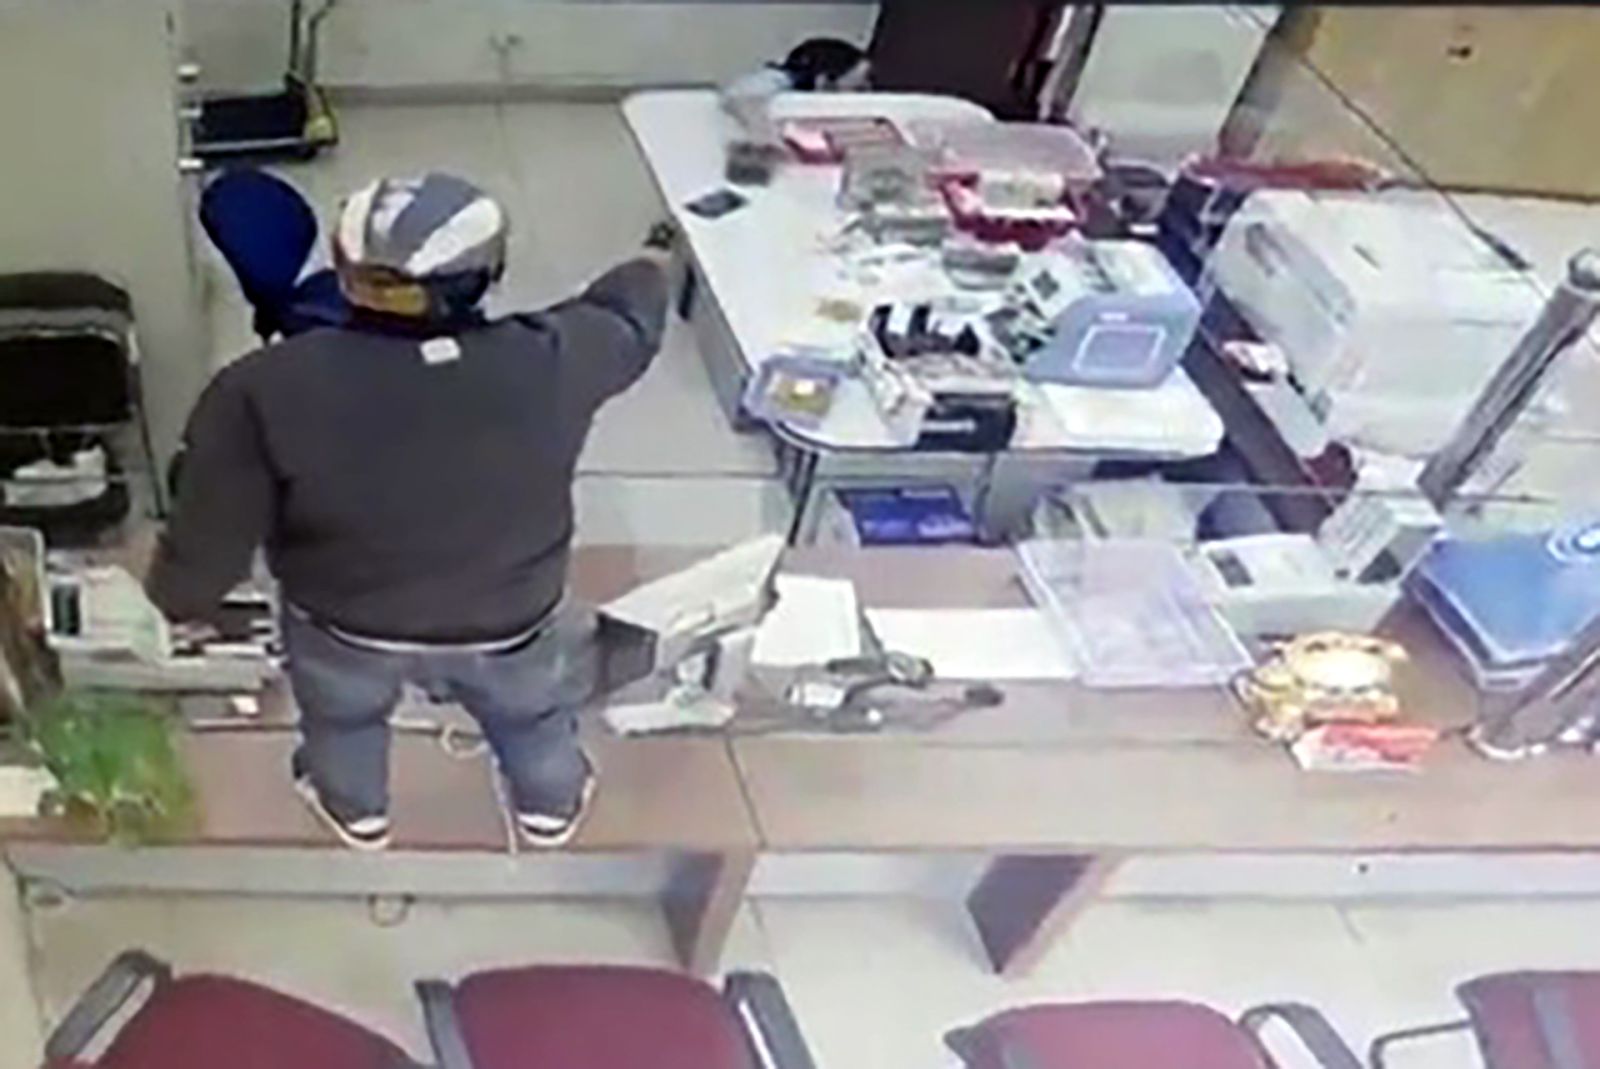 Đã bắt được đối tượng dùng súng cướp ngân hàng ở Lâm Đồng